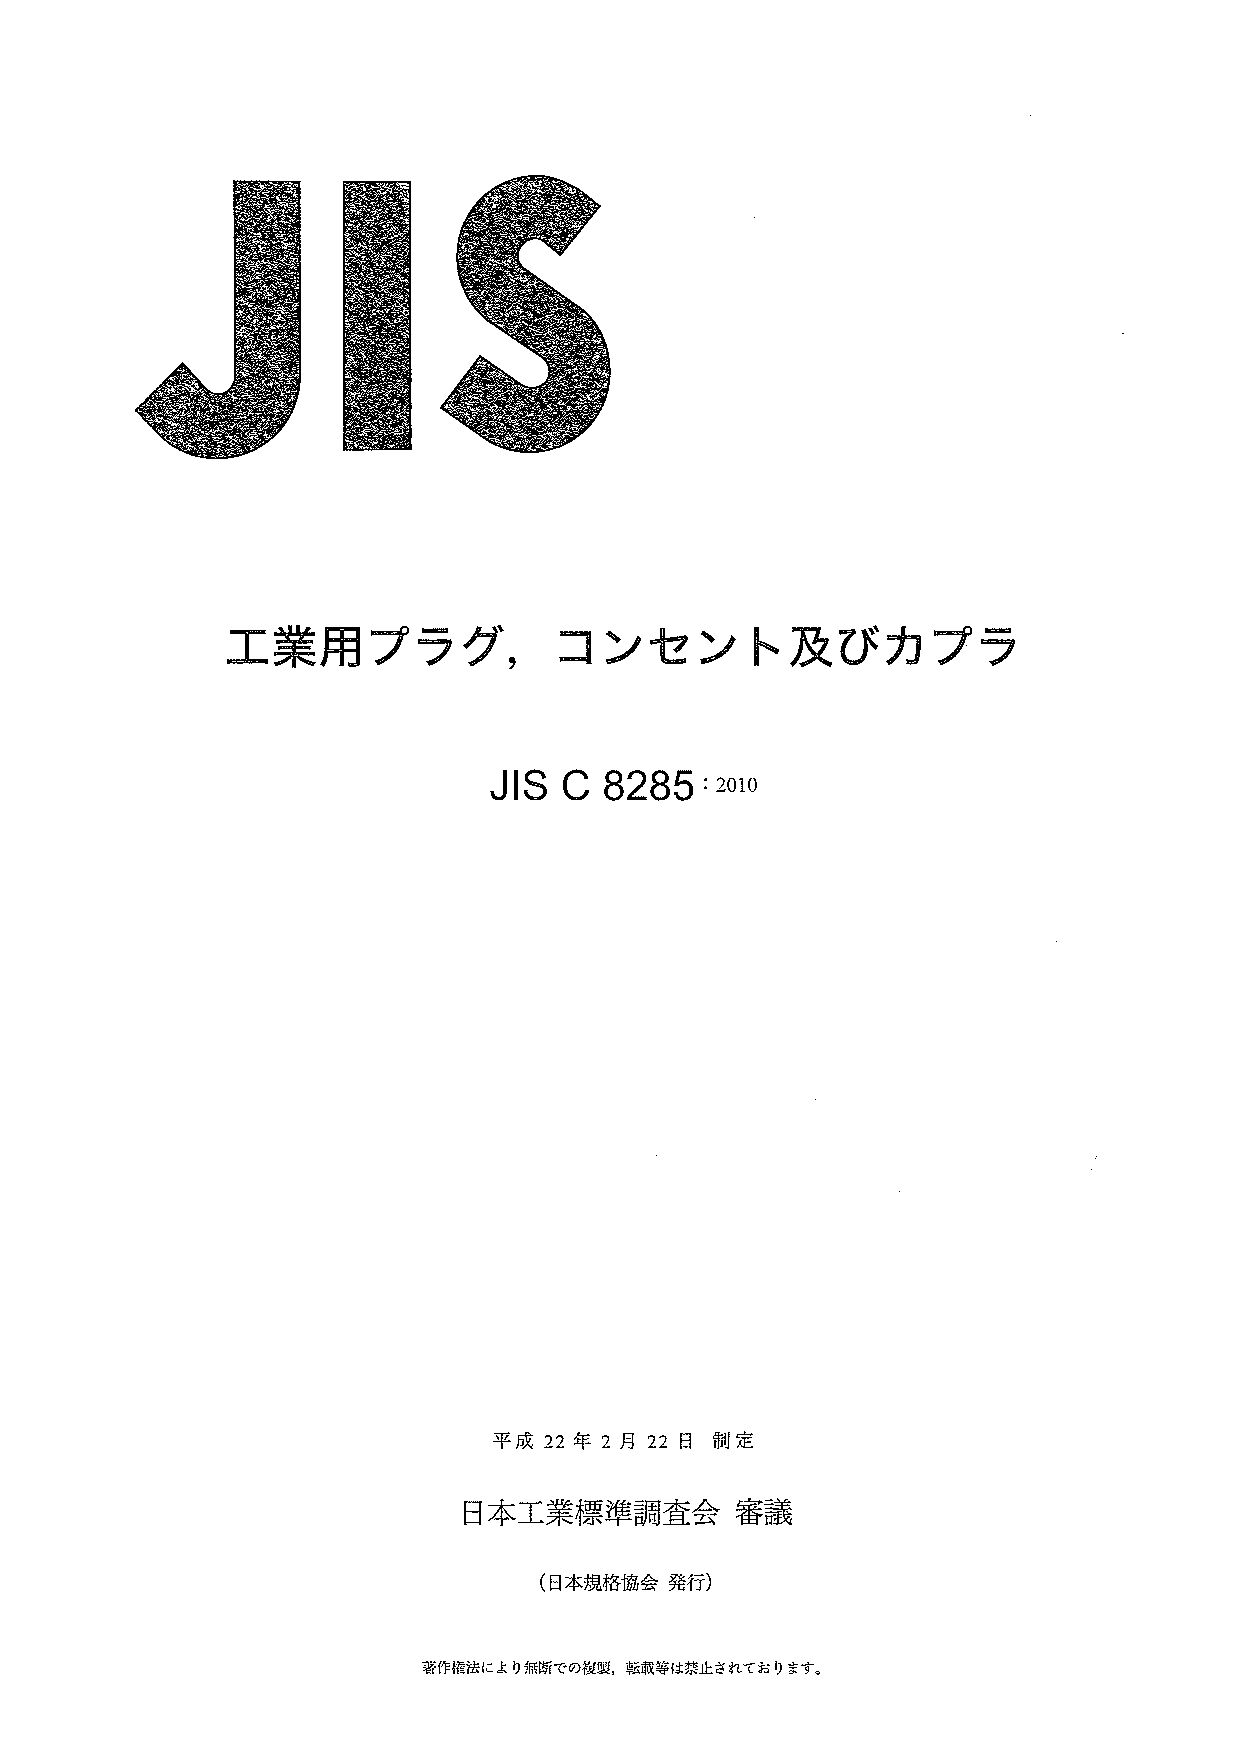 JIS C 8285:2010